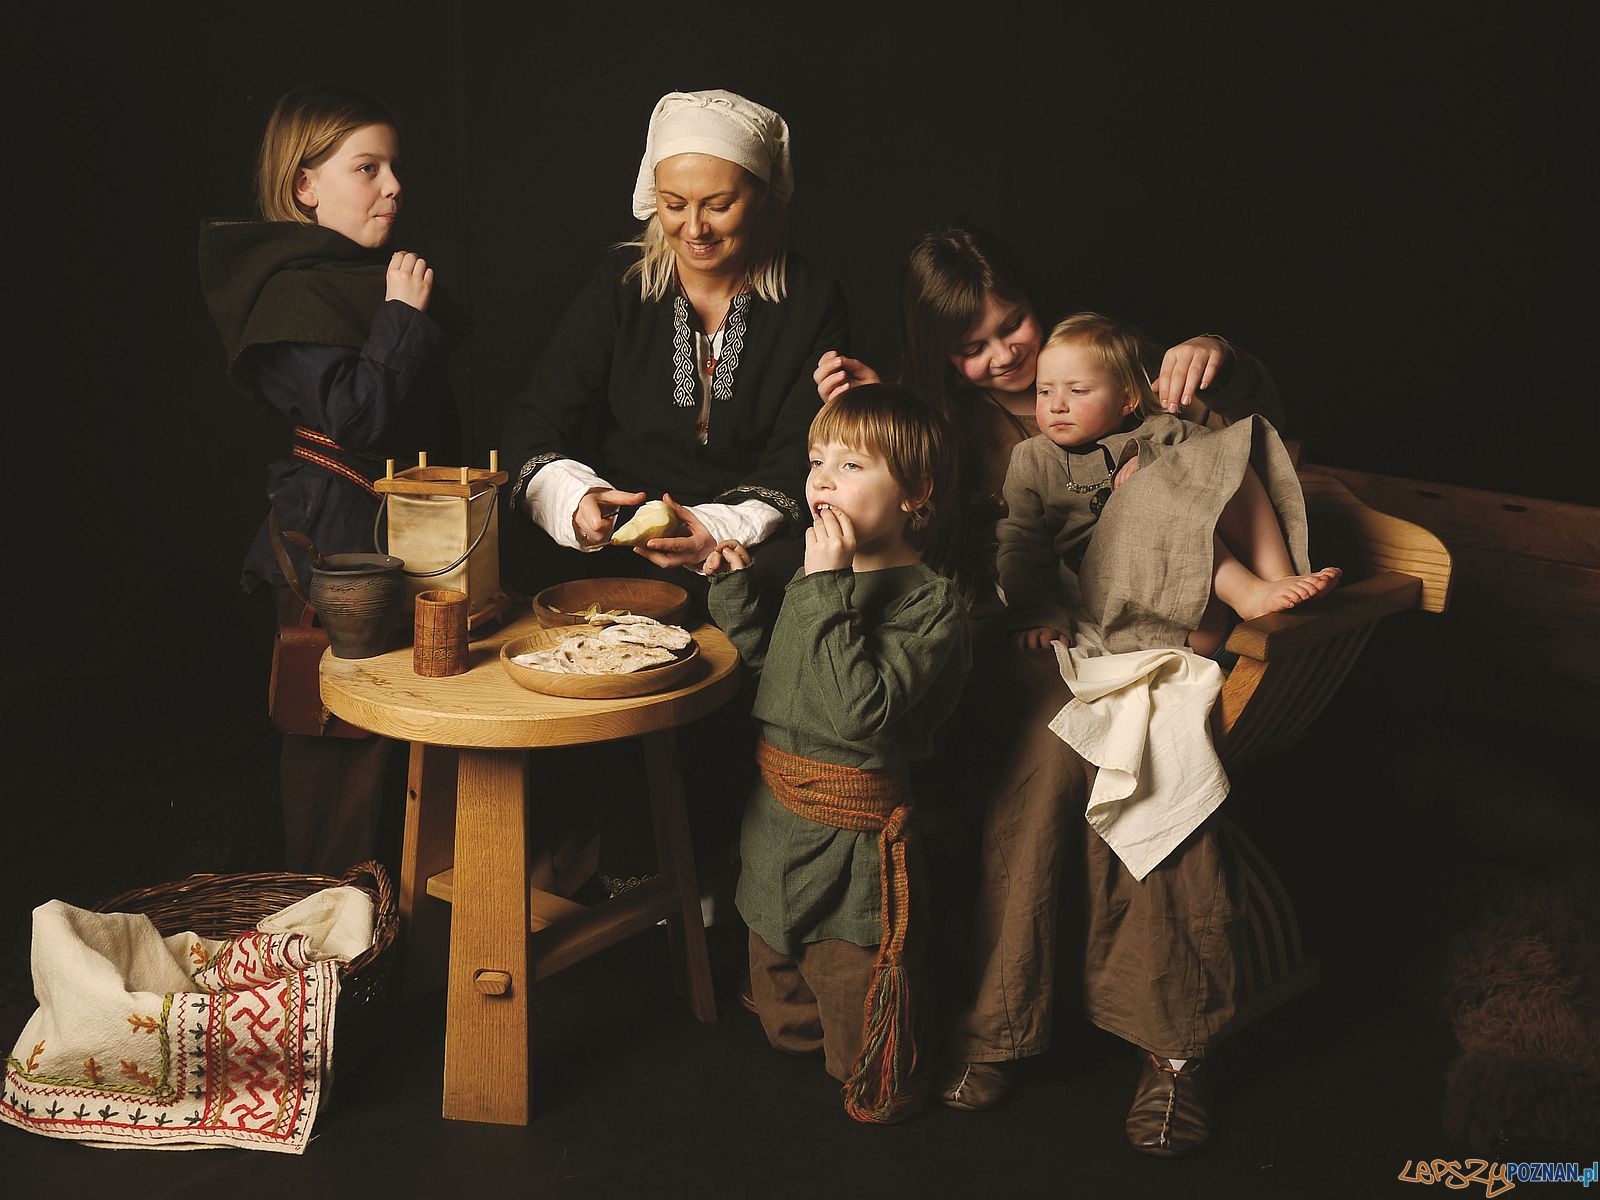 Rodzina w średniowieczu  Foto: Kateriny Zisopulu Bleja / Muzeum Archeologiczne